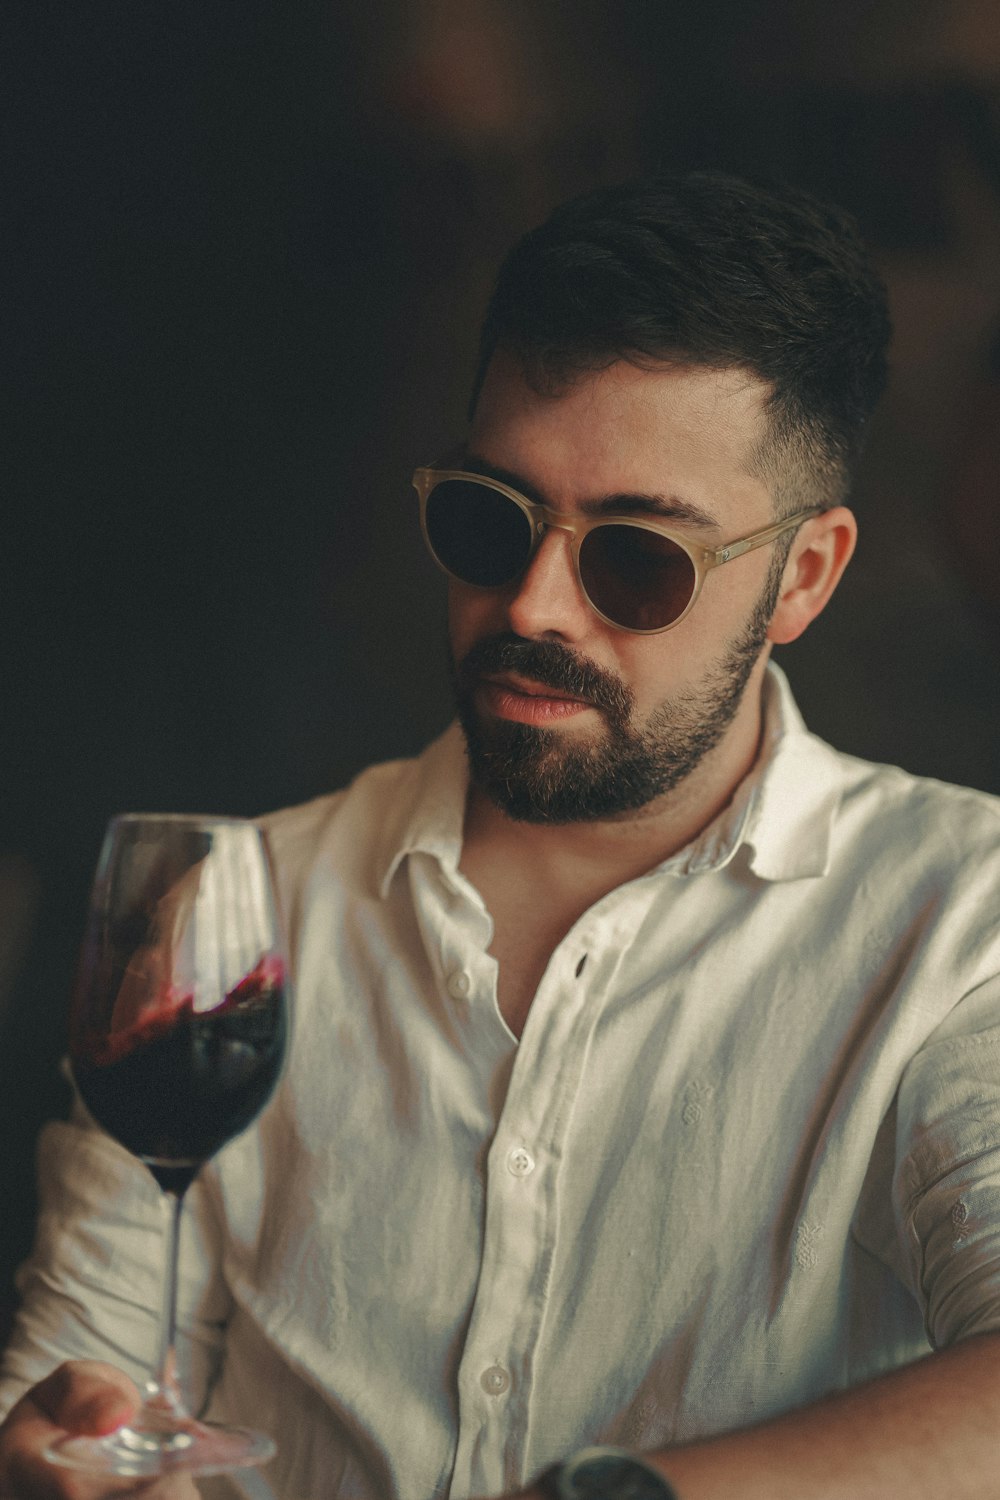 Ein Mann hält ein Glas Rotwein in der Hand